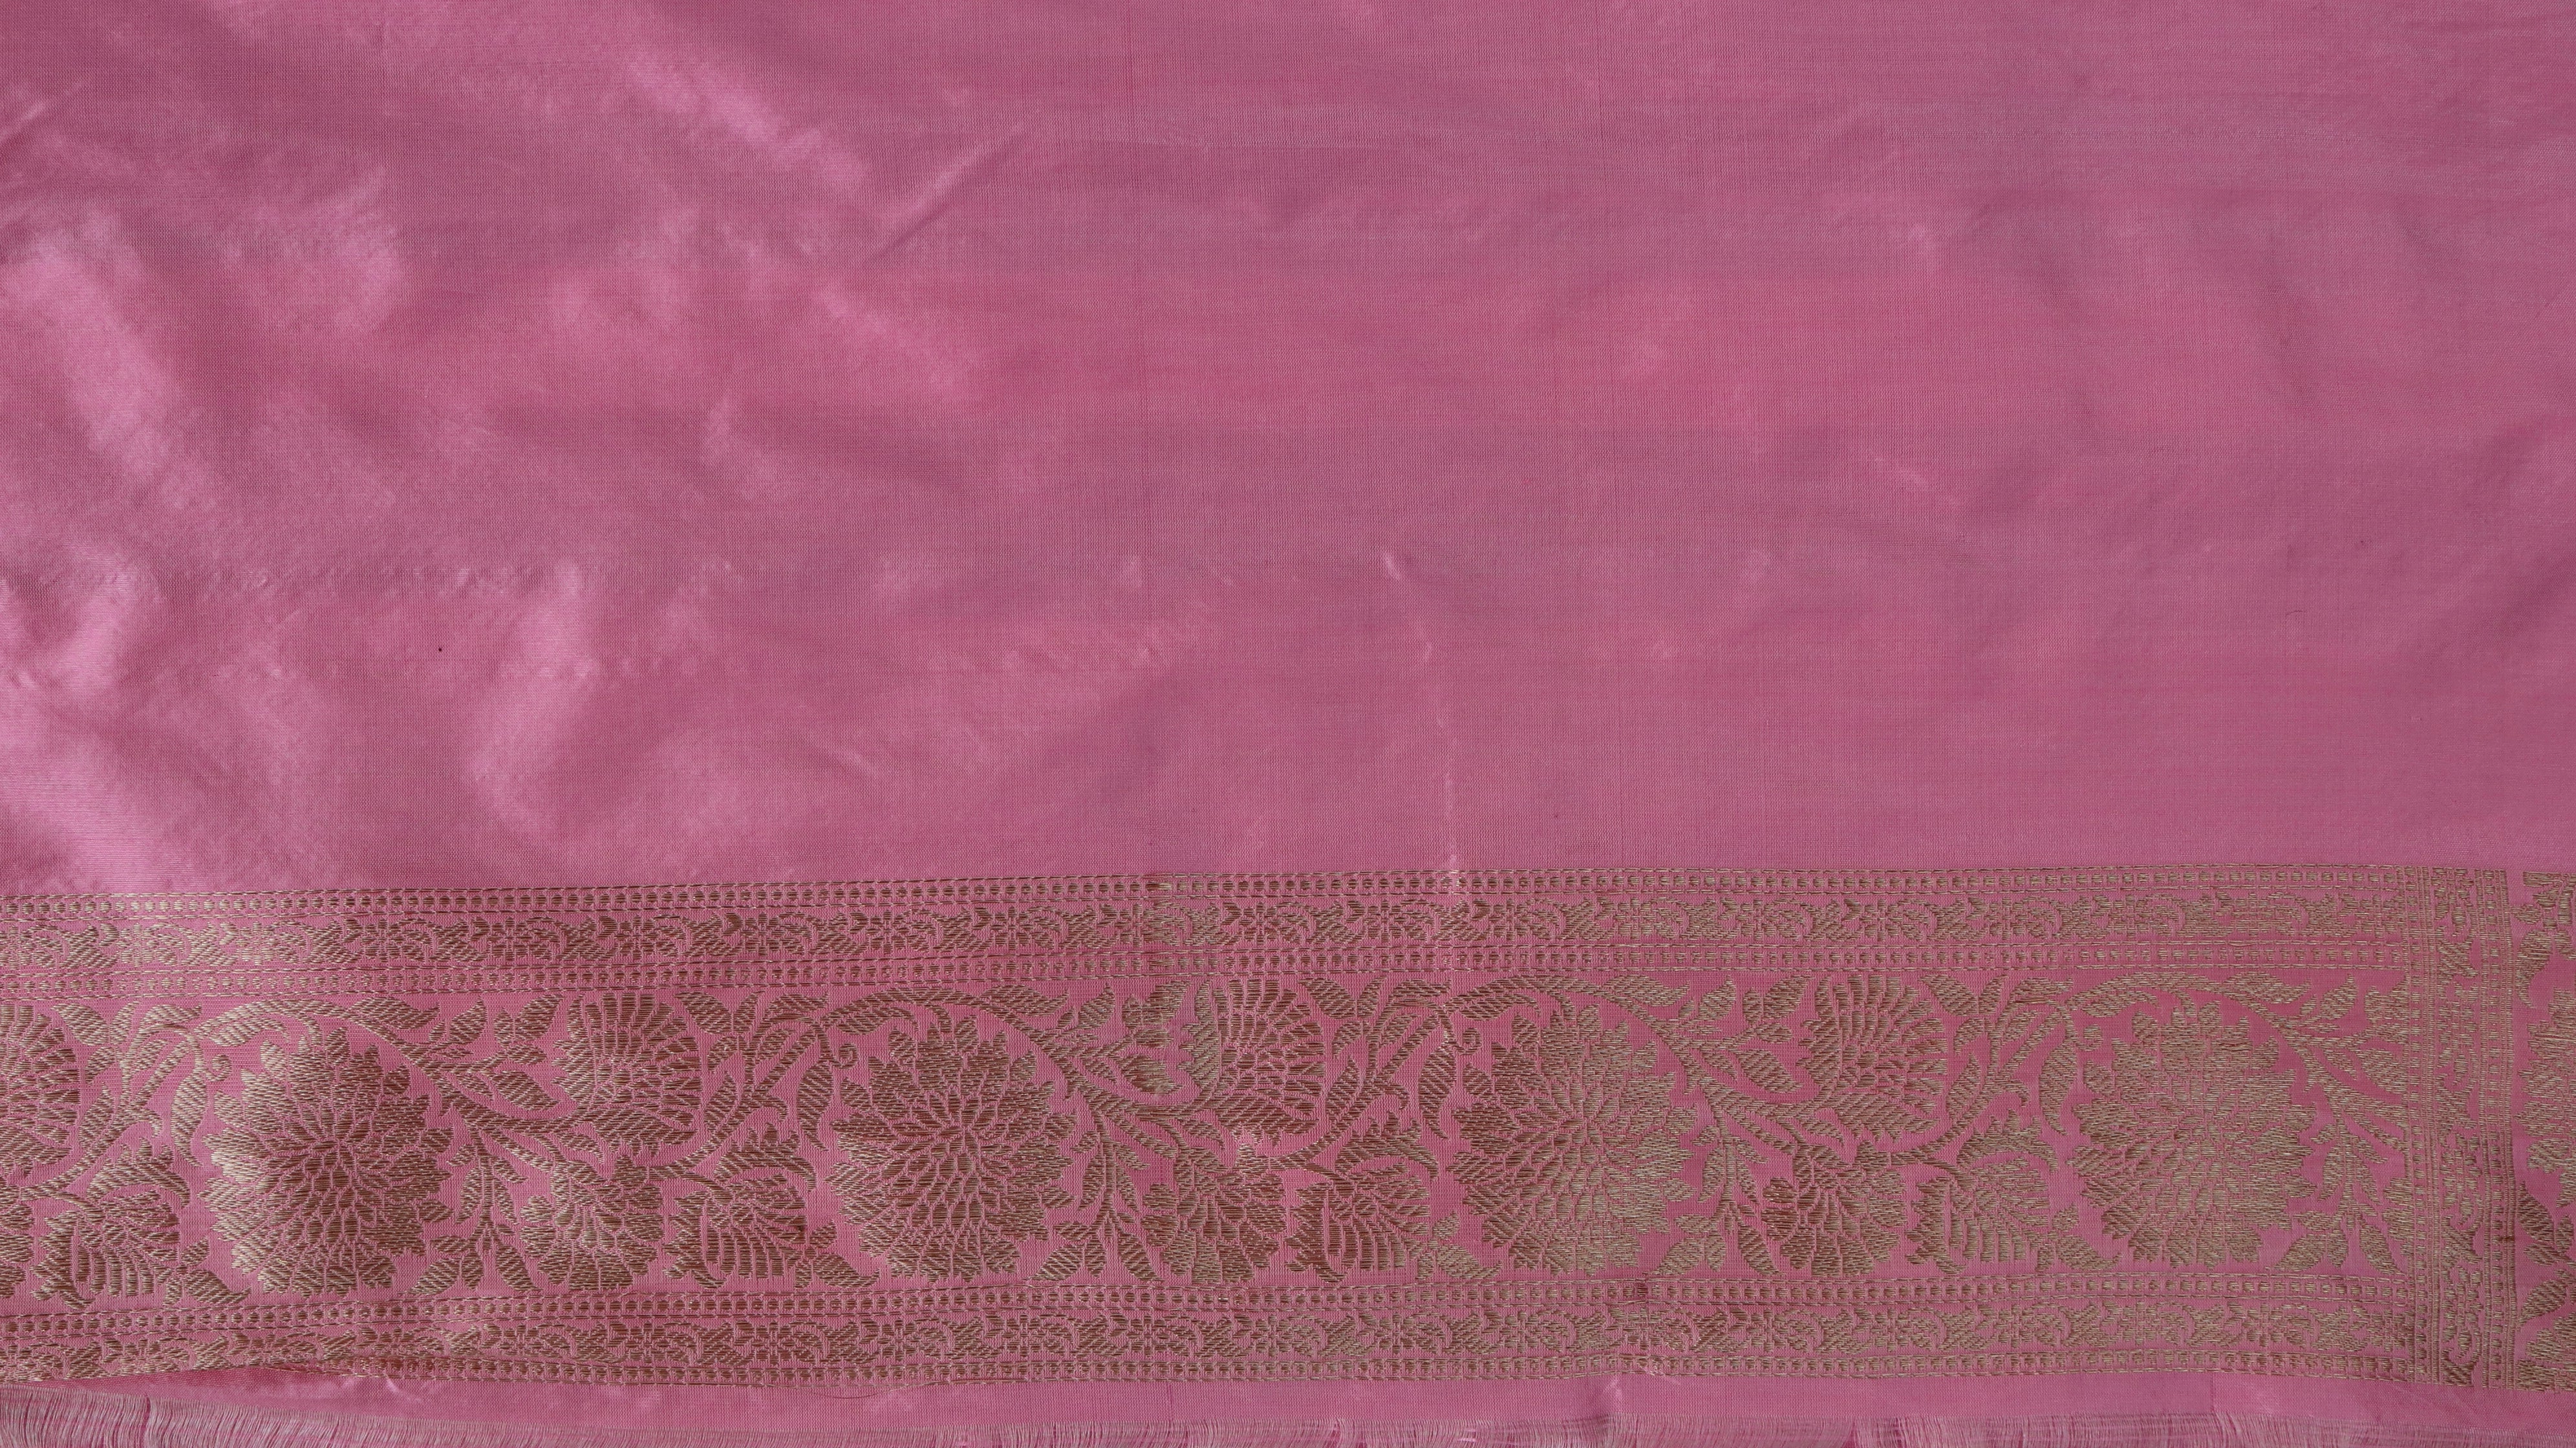 Handloom, Banarasi Handloom Saree, Alfi Saree, Tilfi Saree, Tilfi Saree Banaras, Tilfi, Banarasi Bunkar, Banarasi Bridal Wear, BridalWear, Banarasi Handloom Banarasi Baby Pink Jangla Pure Silk Handloom Banarasi Saree Banarasi Saree